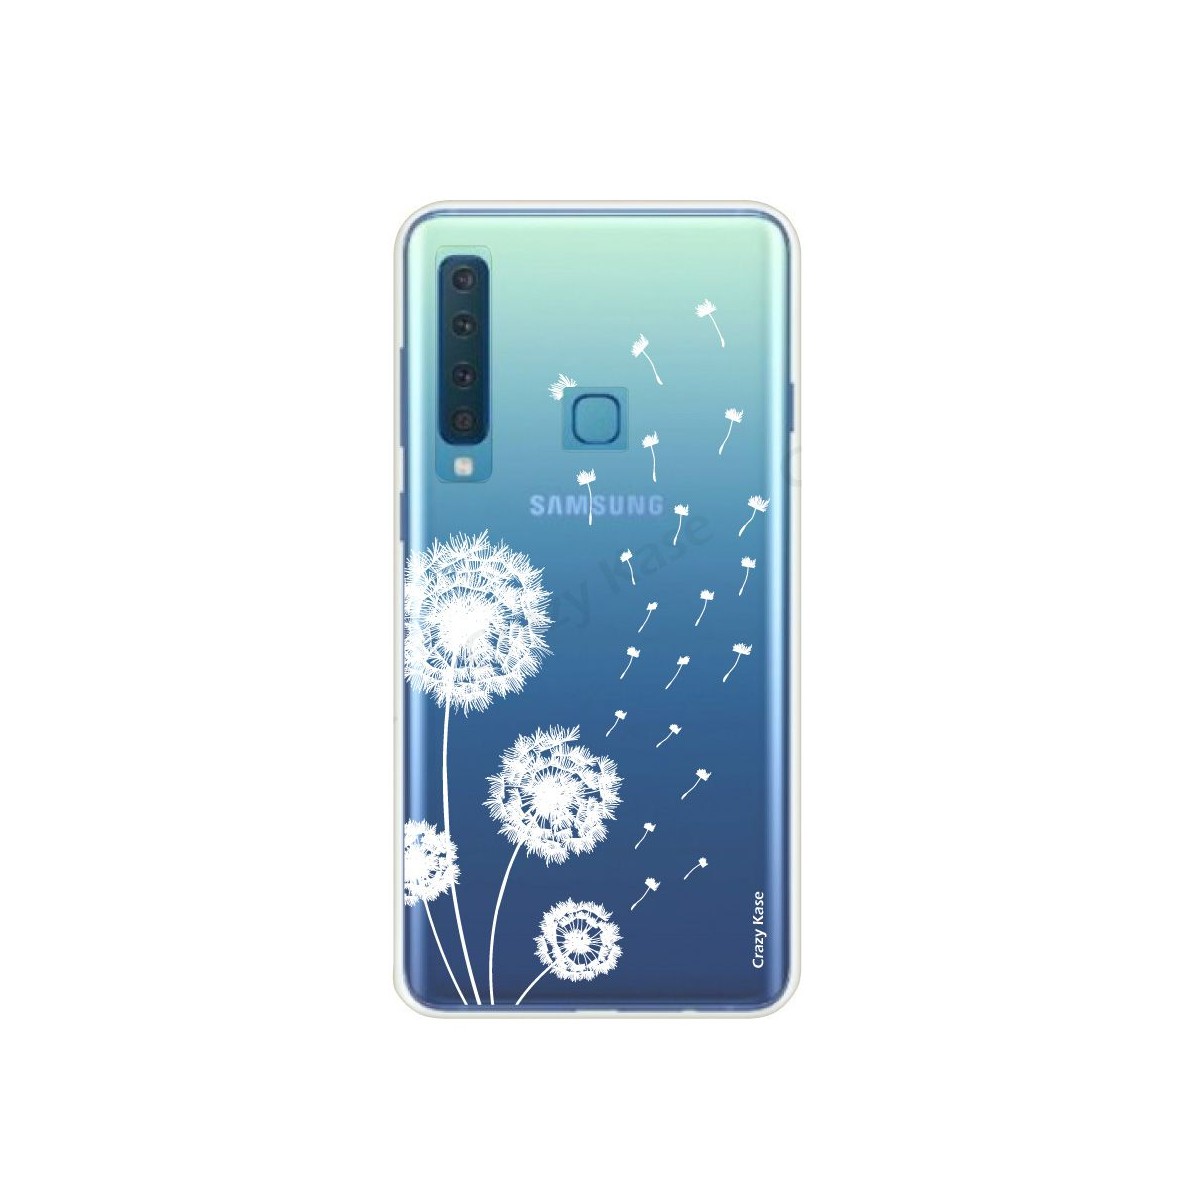 Coque compatible Galaxy A9 (2018) souple Fleurs de pissenlit - Crazy Kase